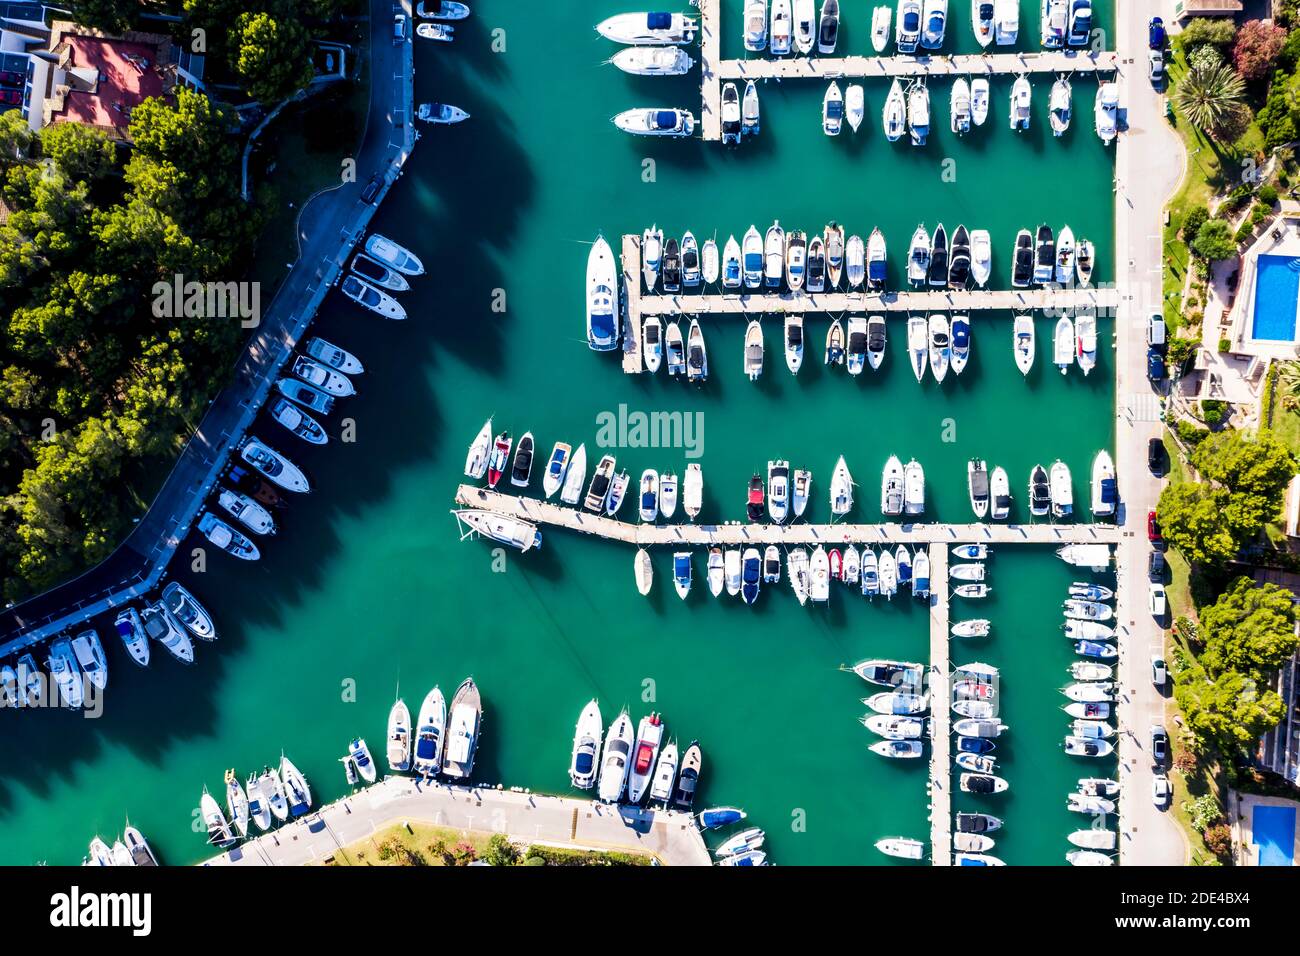 Aerial view, Marina of Santa Ponsa, Calvia region, Majorca, Balearic Islands, Spain Stock Photo